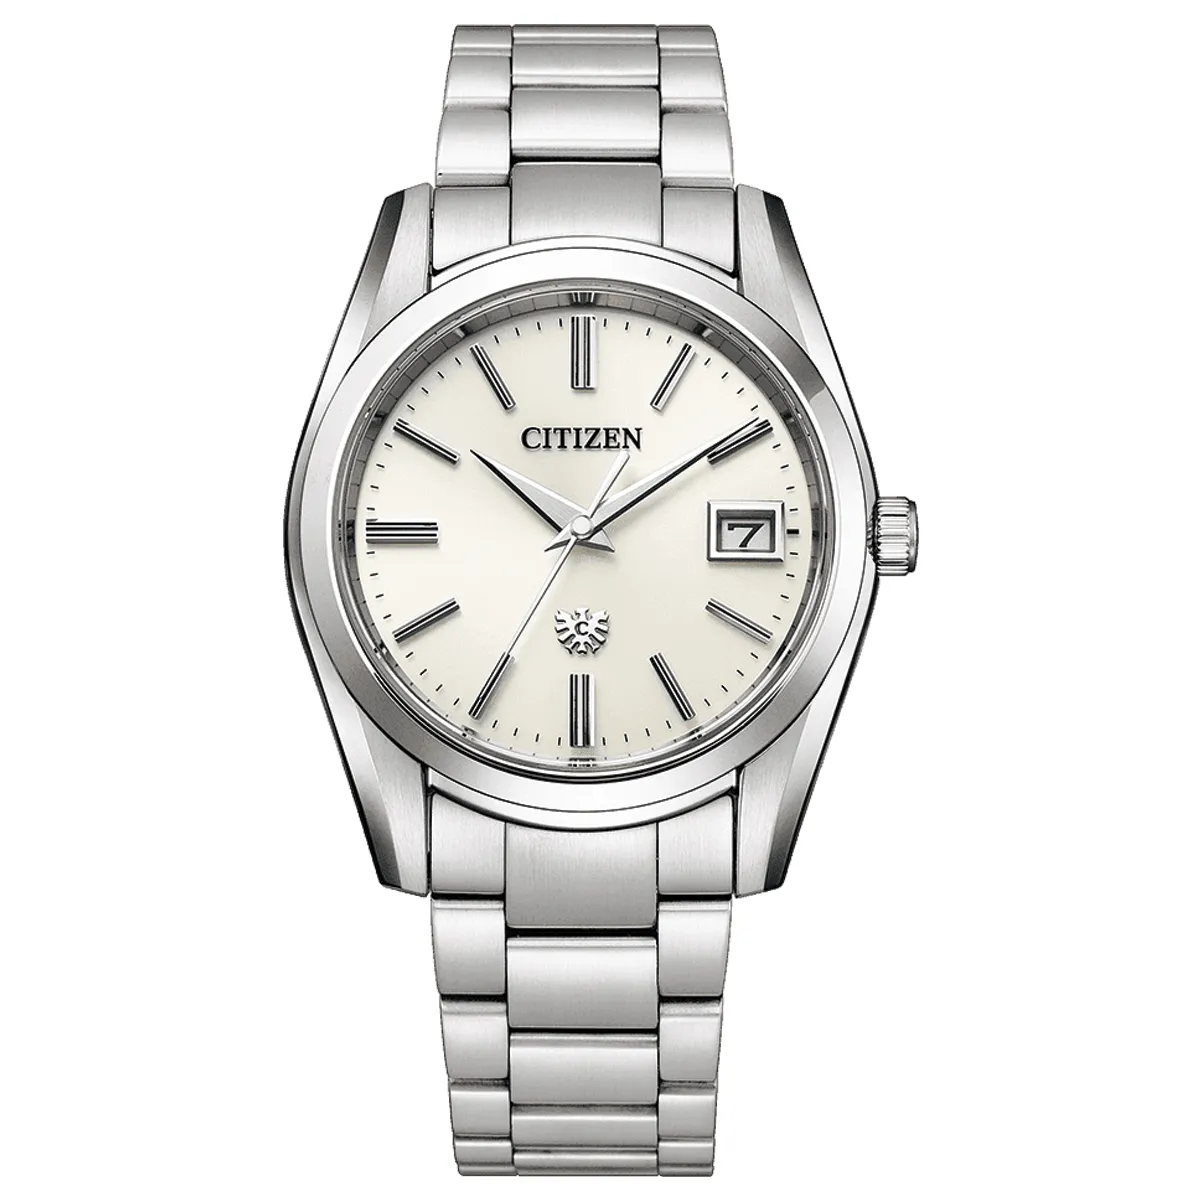 Đồng hồ The Citizen Eco-Drive AQ4080-52A mặt số màu bạc. Dây đeo bằng thép. Thân vỏ bằng thép.